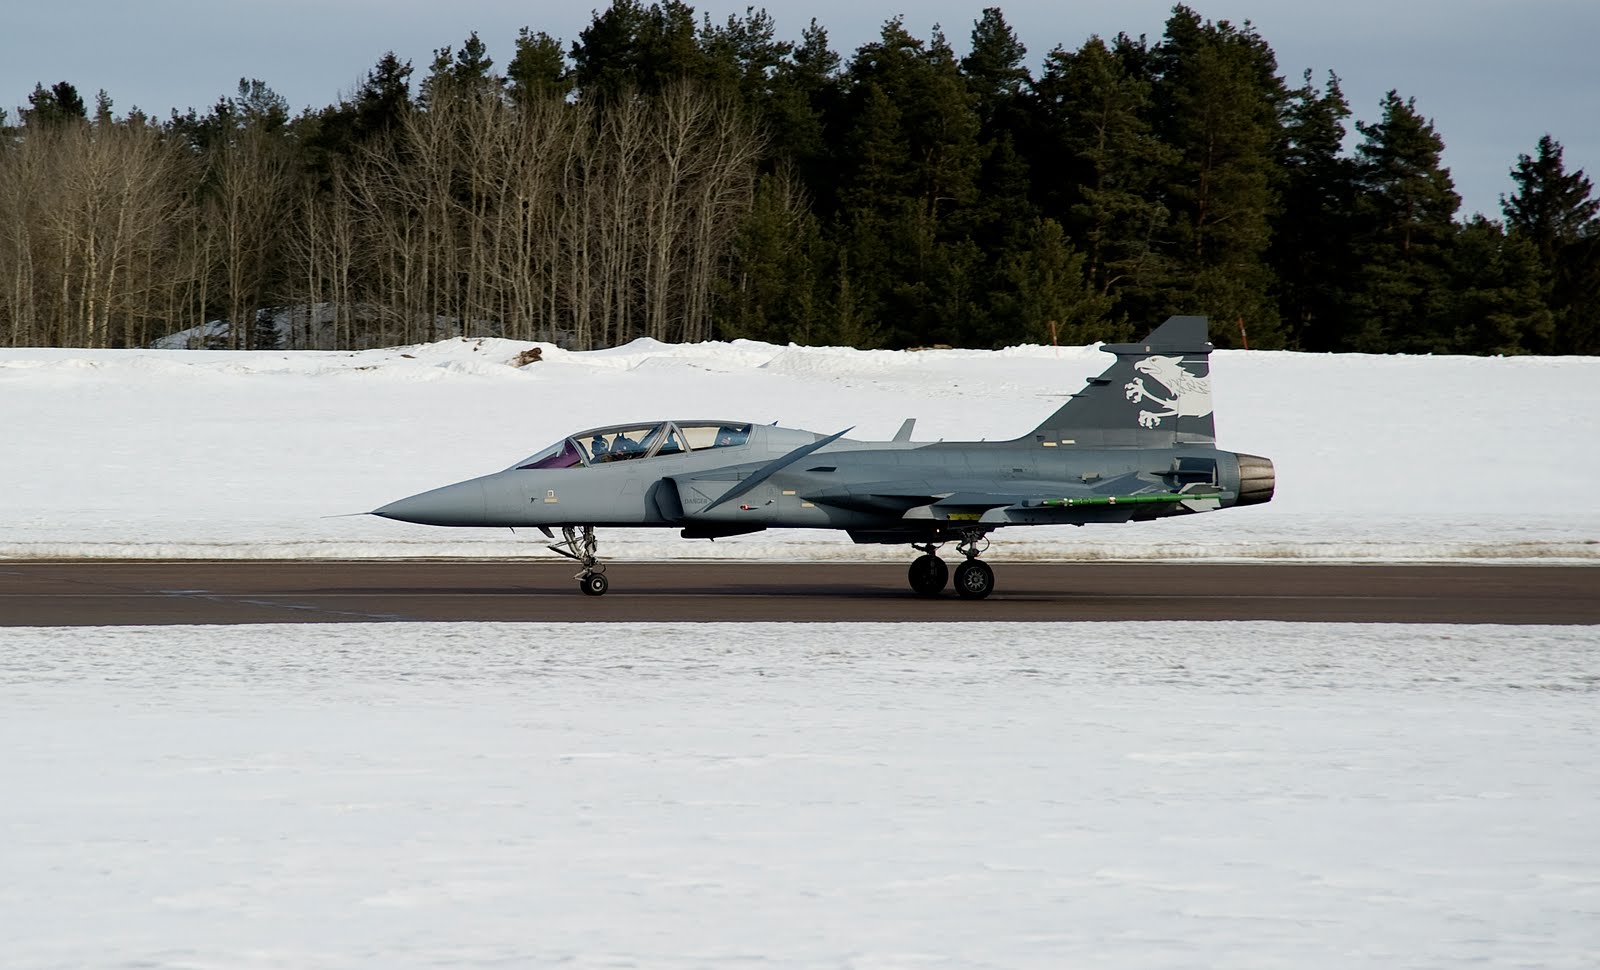           'Gripen NG' (Sweden)
Swedens advanced version of JAS-39A 